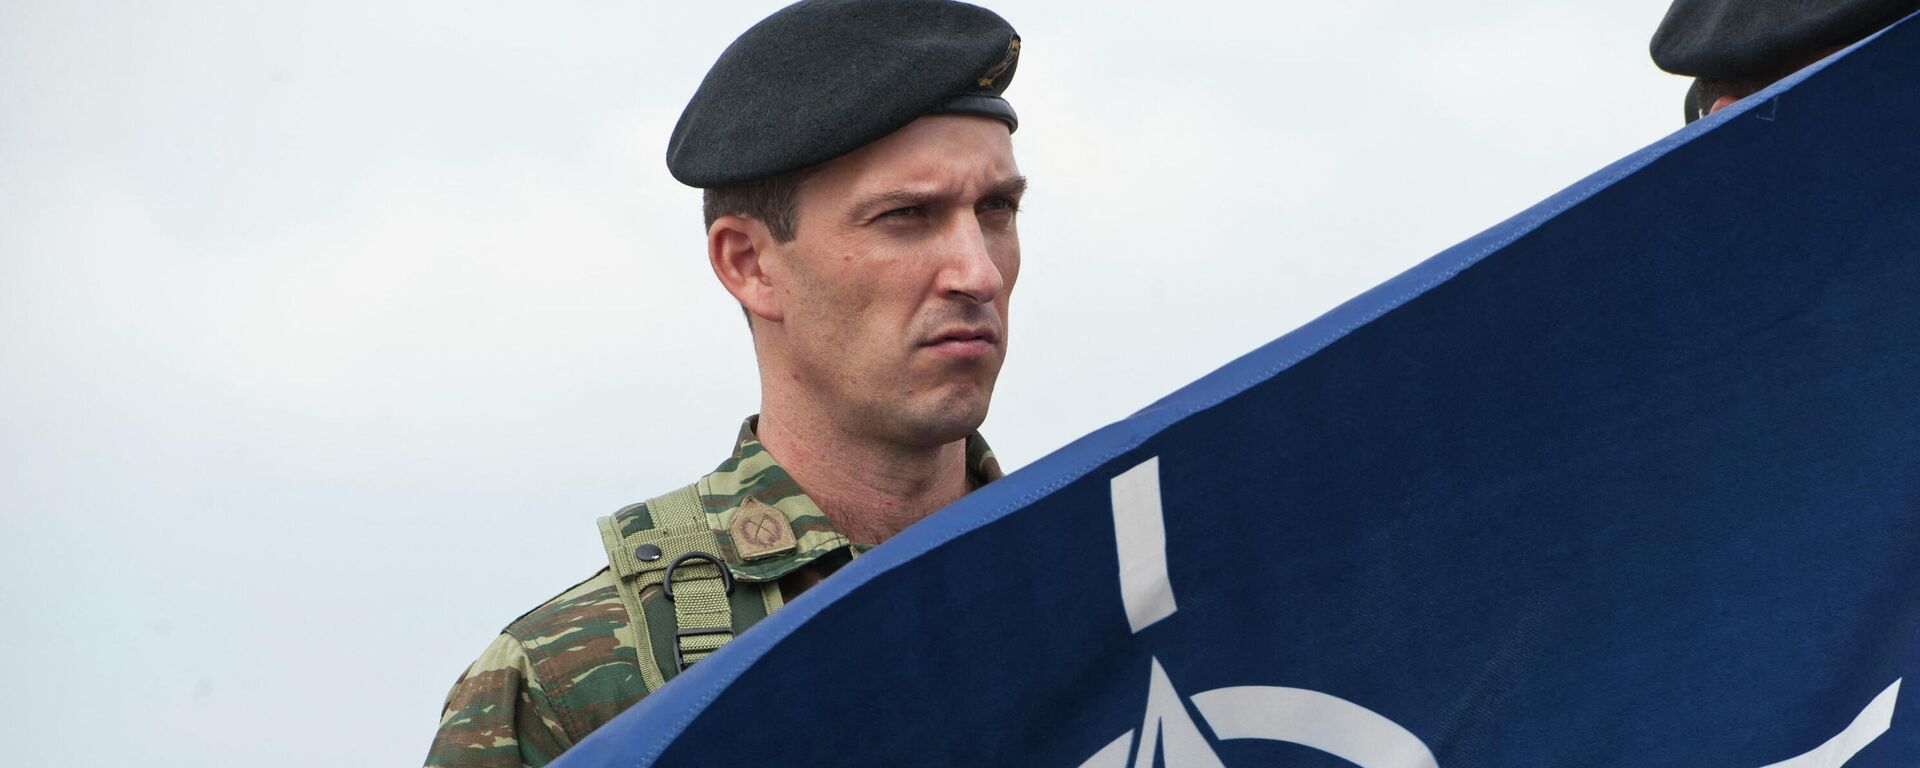 Члены миротворческих сил под руководством НАТО в Косово (KFOR) держат флаг НАТО - Sputnik Абхазия, 1920, 15.02.2023